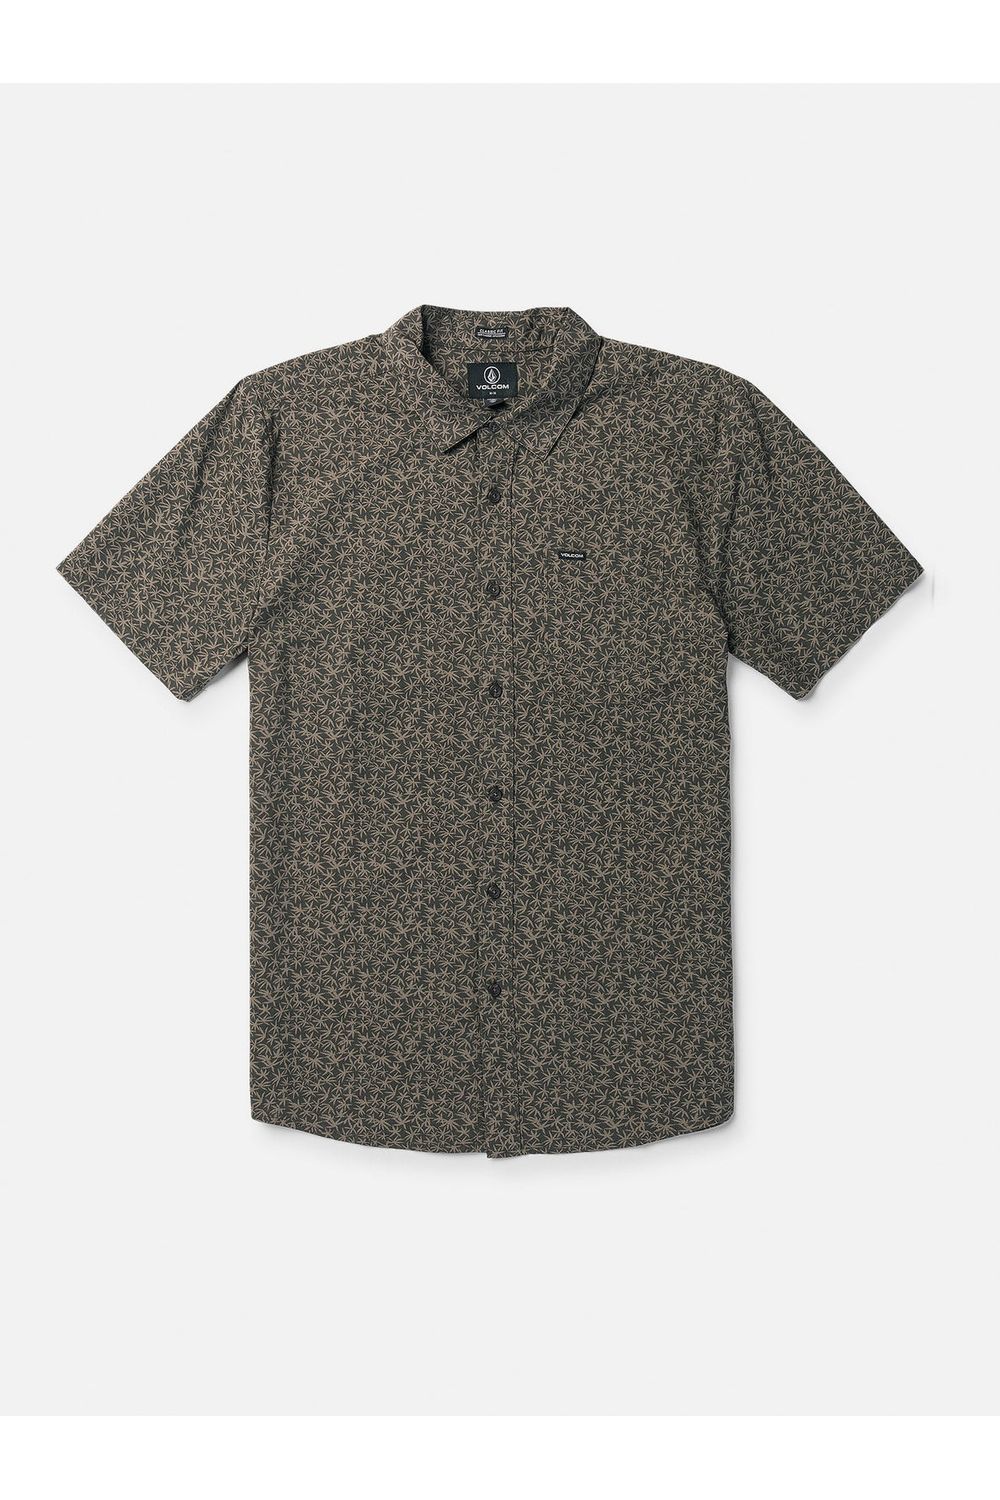 Volcom Stone Mash Short Sleeve Shirt Stealth